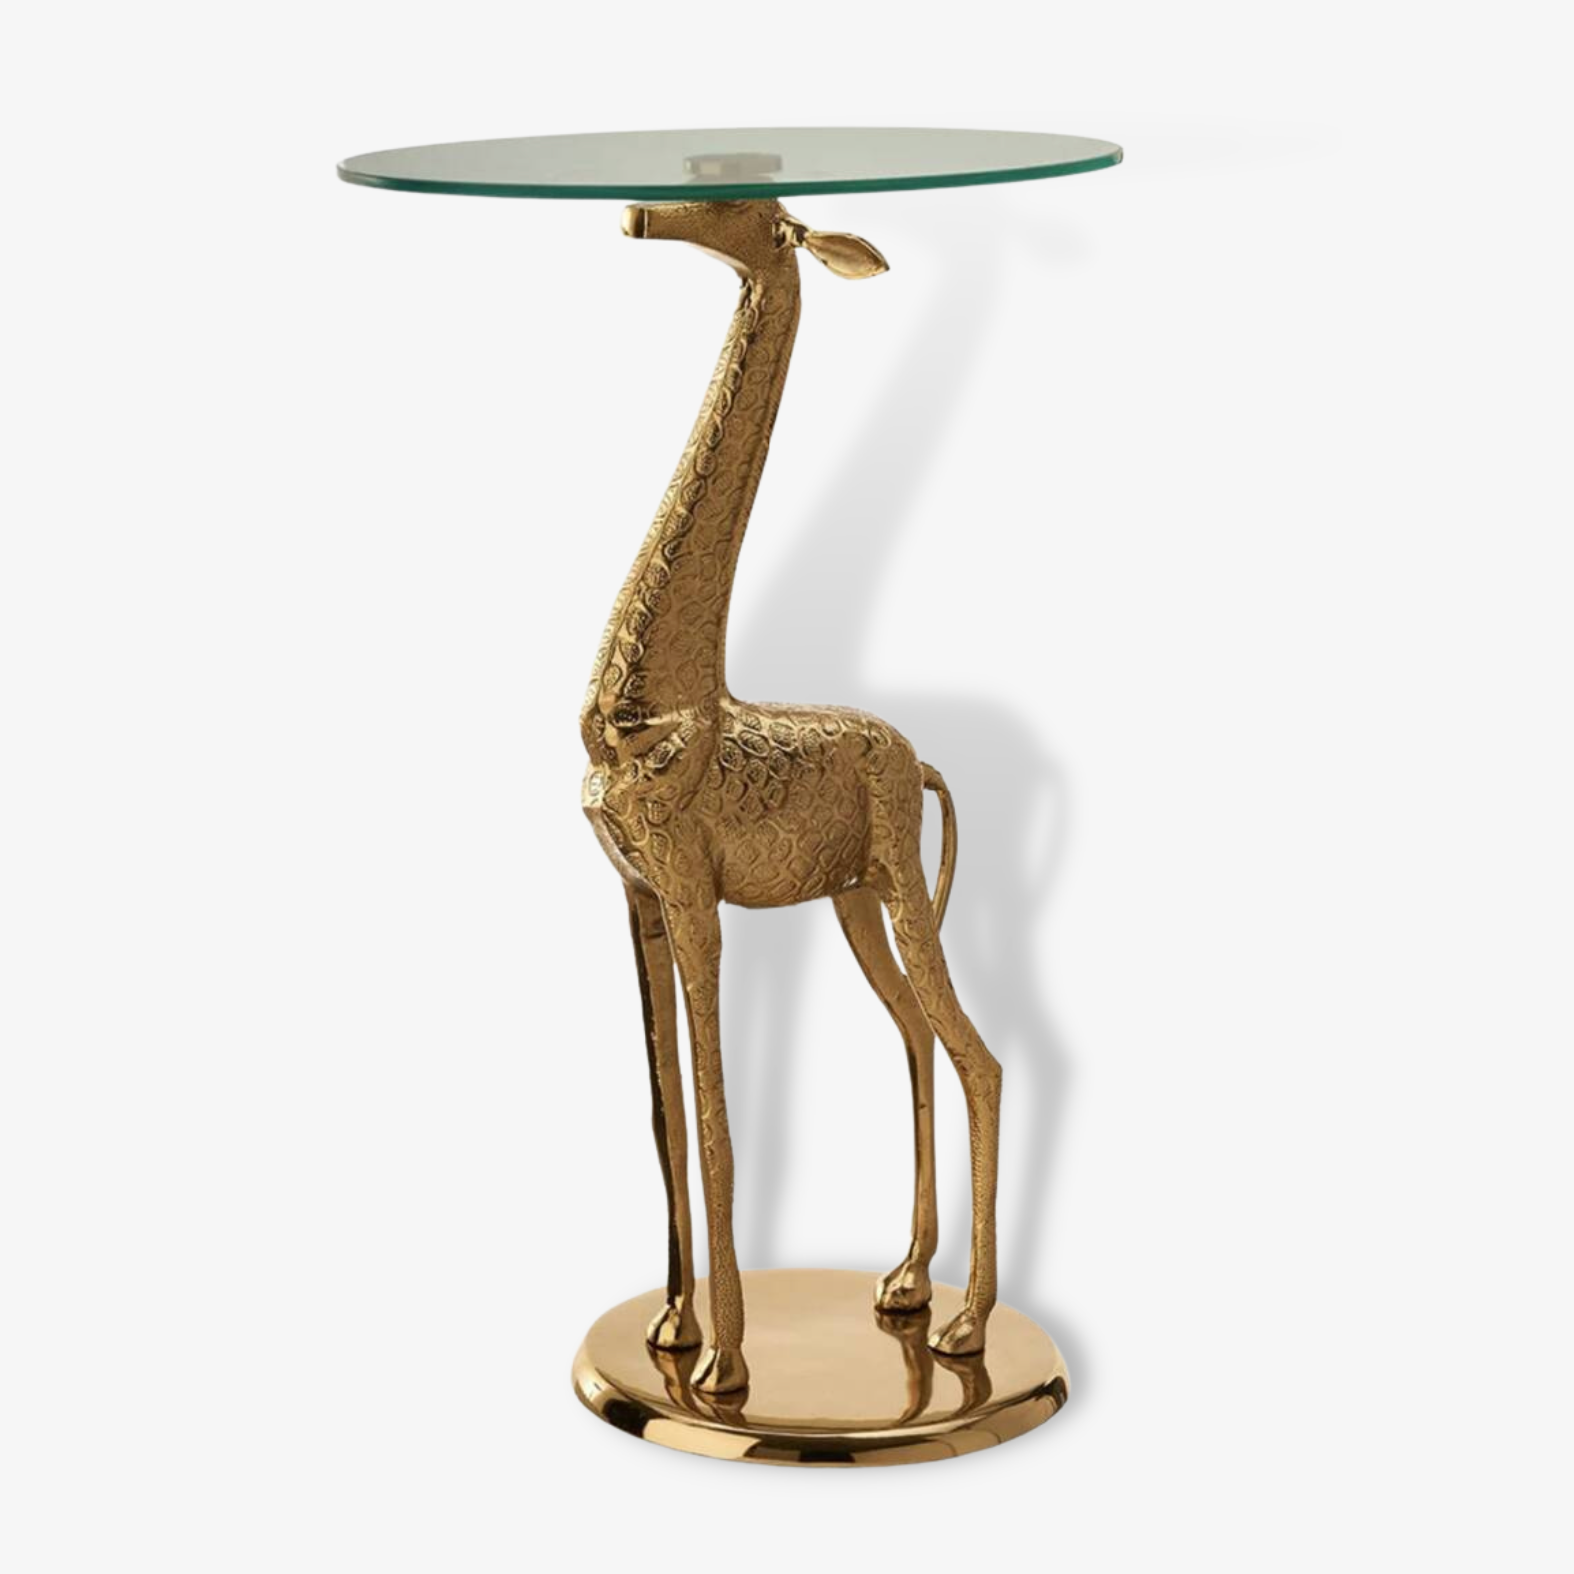 Pols Potten Giraffe Side Table